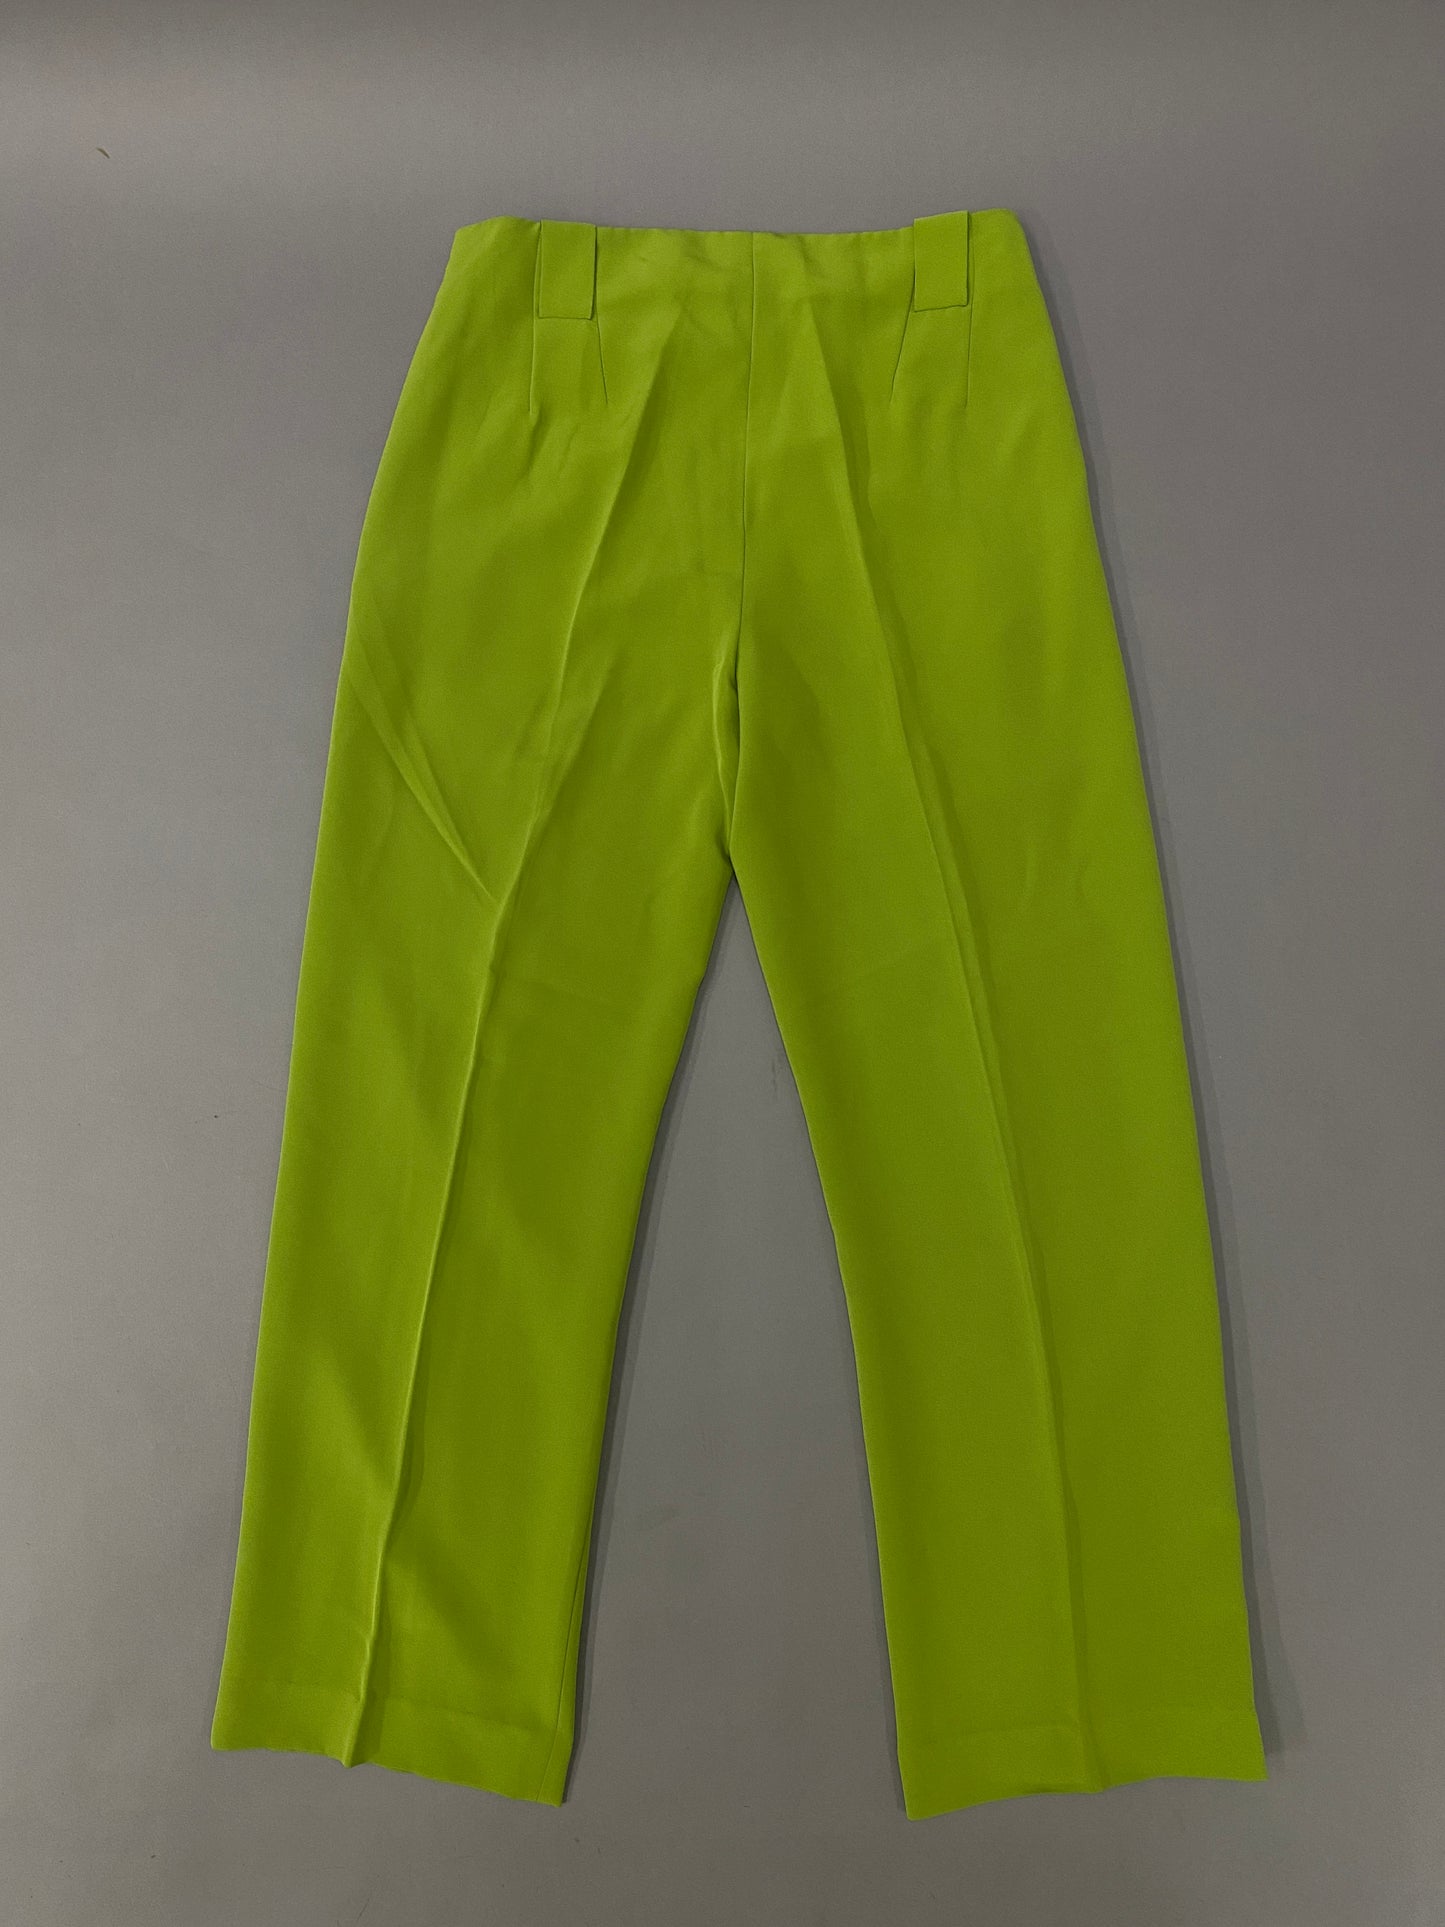 Pantalón Neon 80's - 30